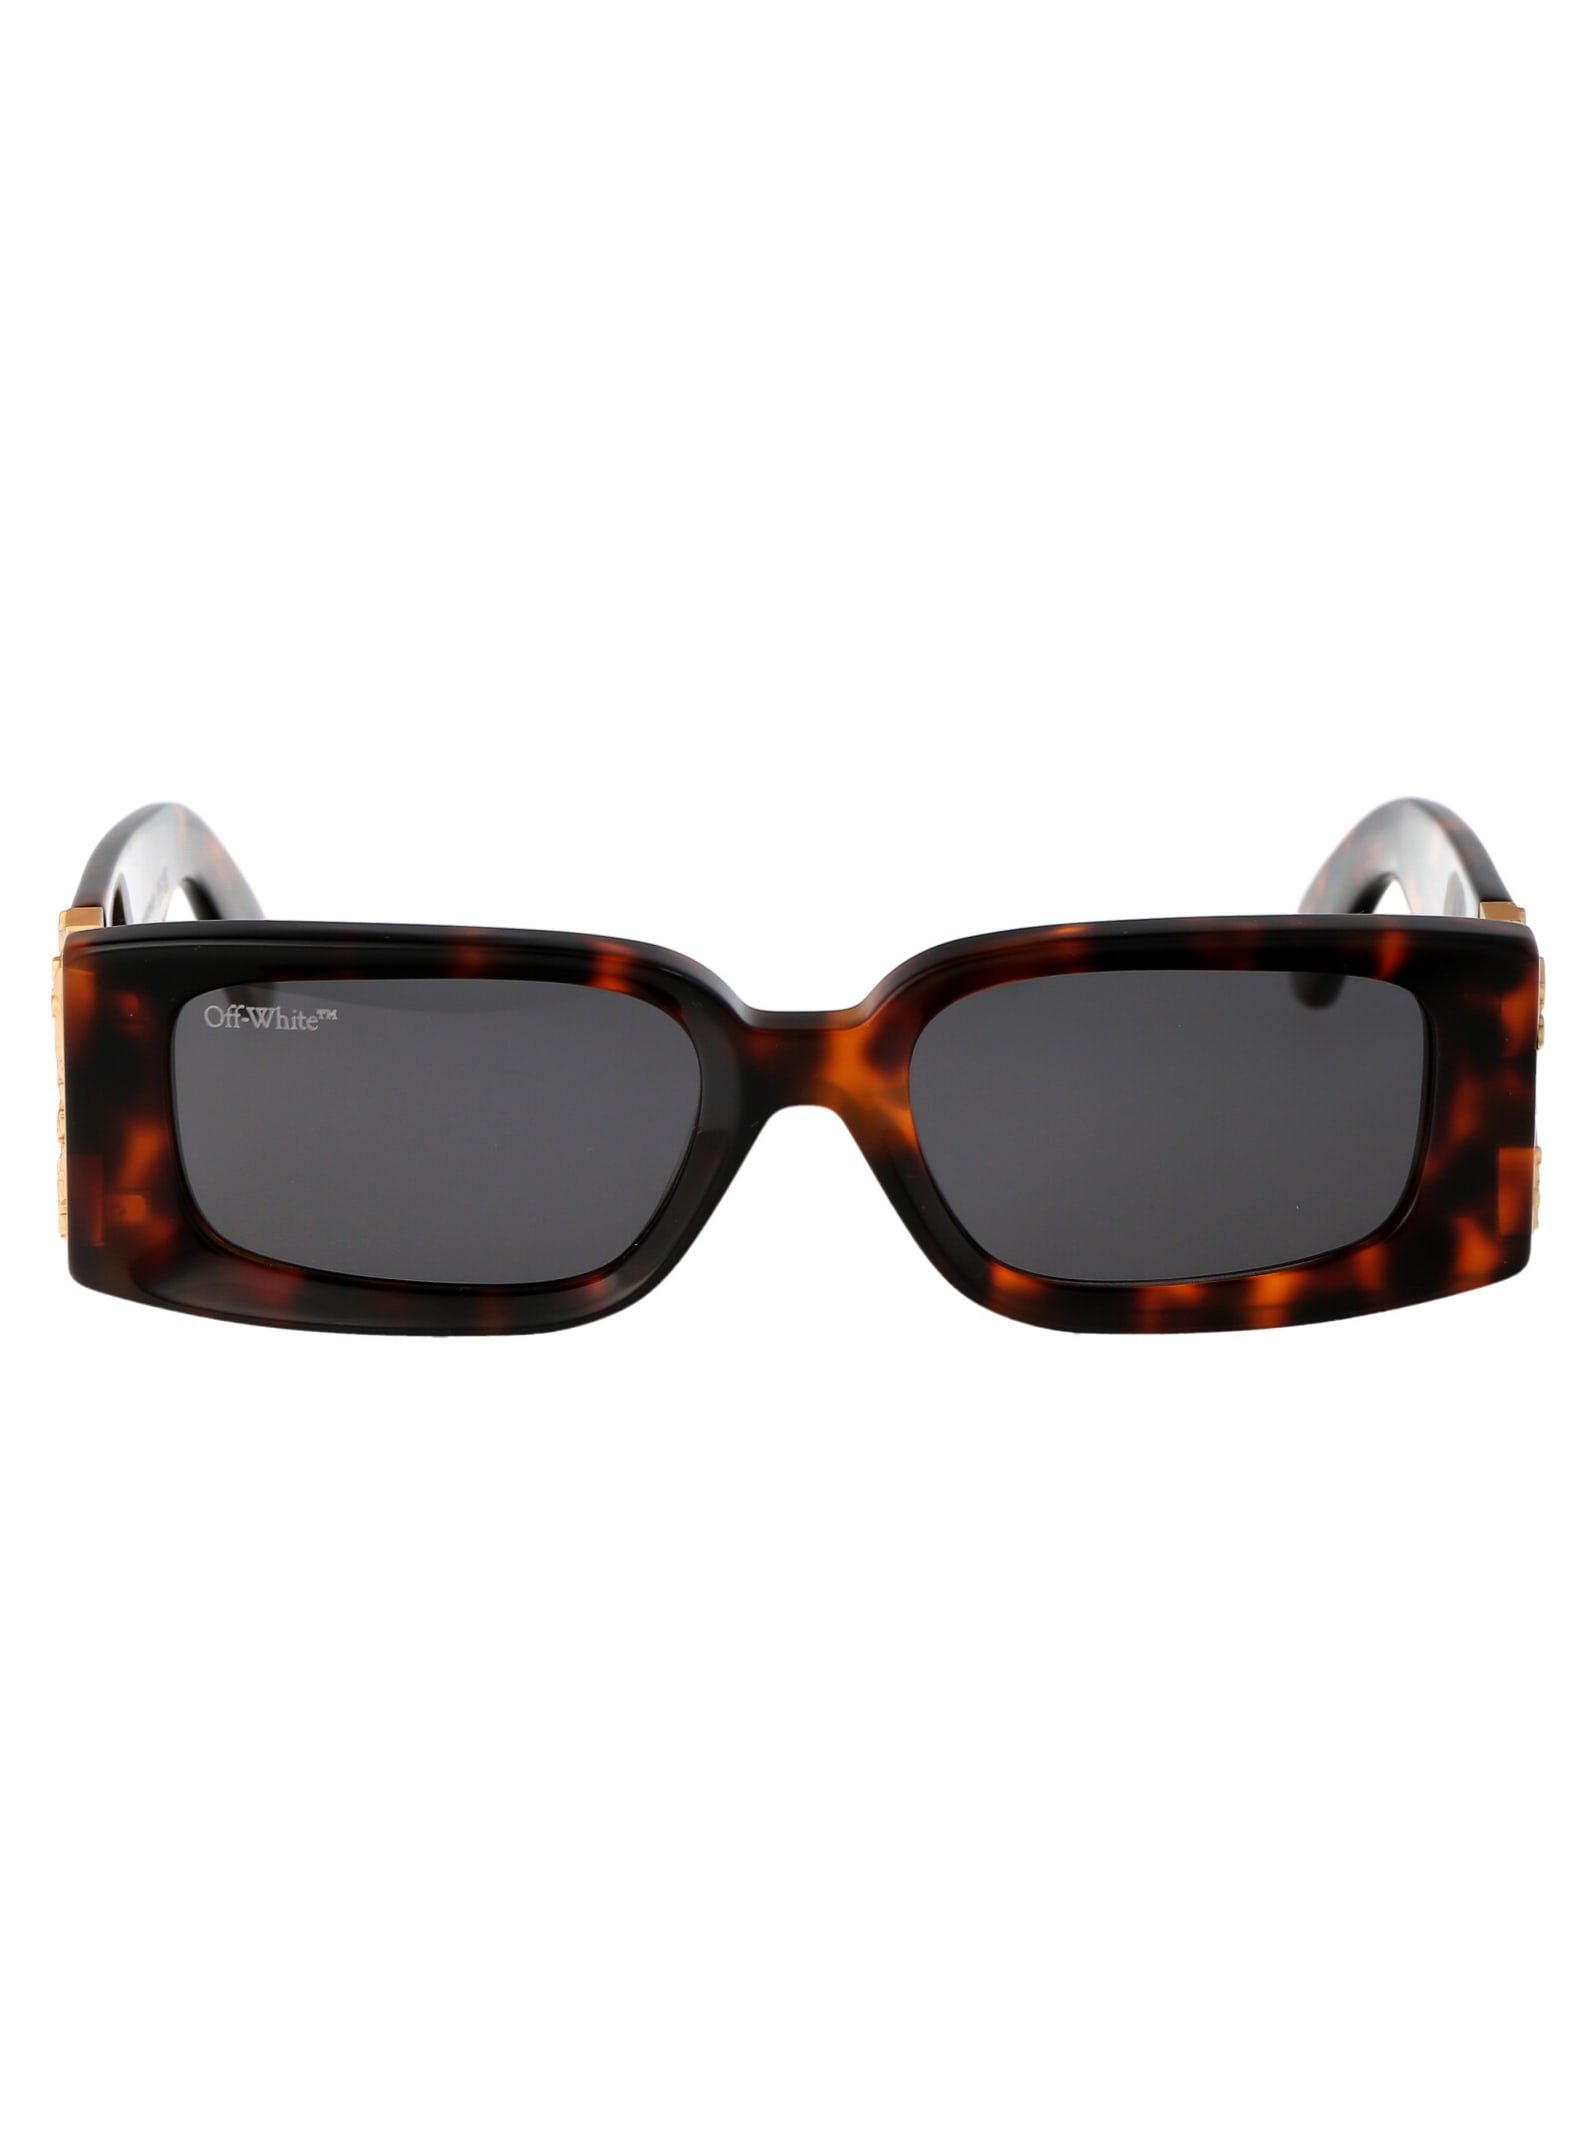 Off-white Roma Sunglasses In Brown